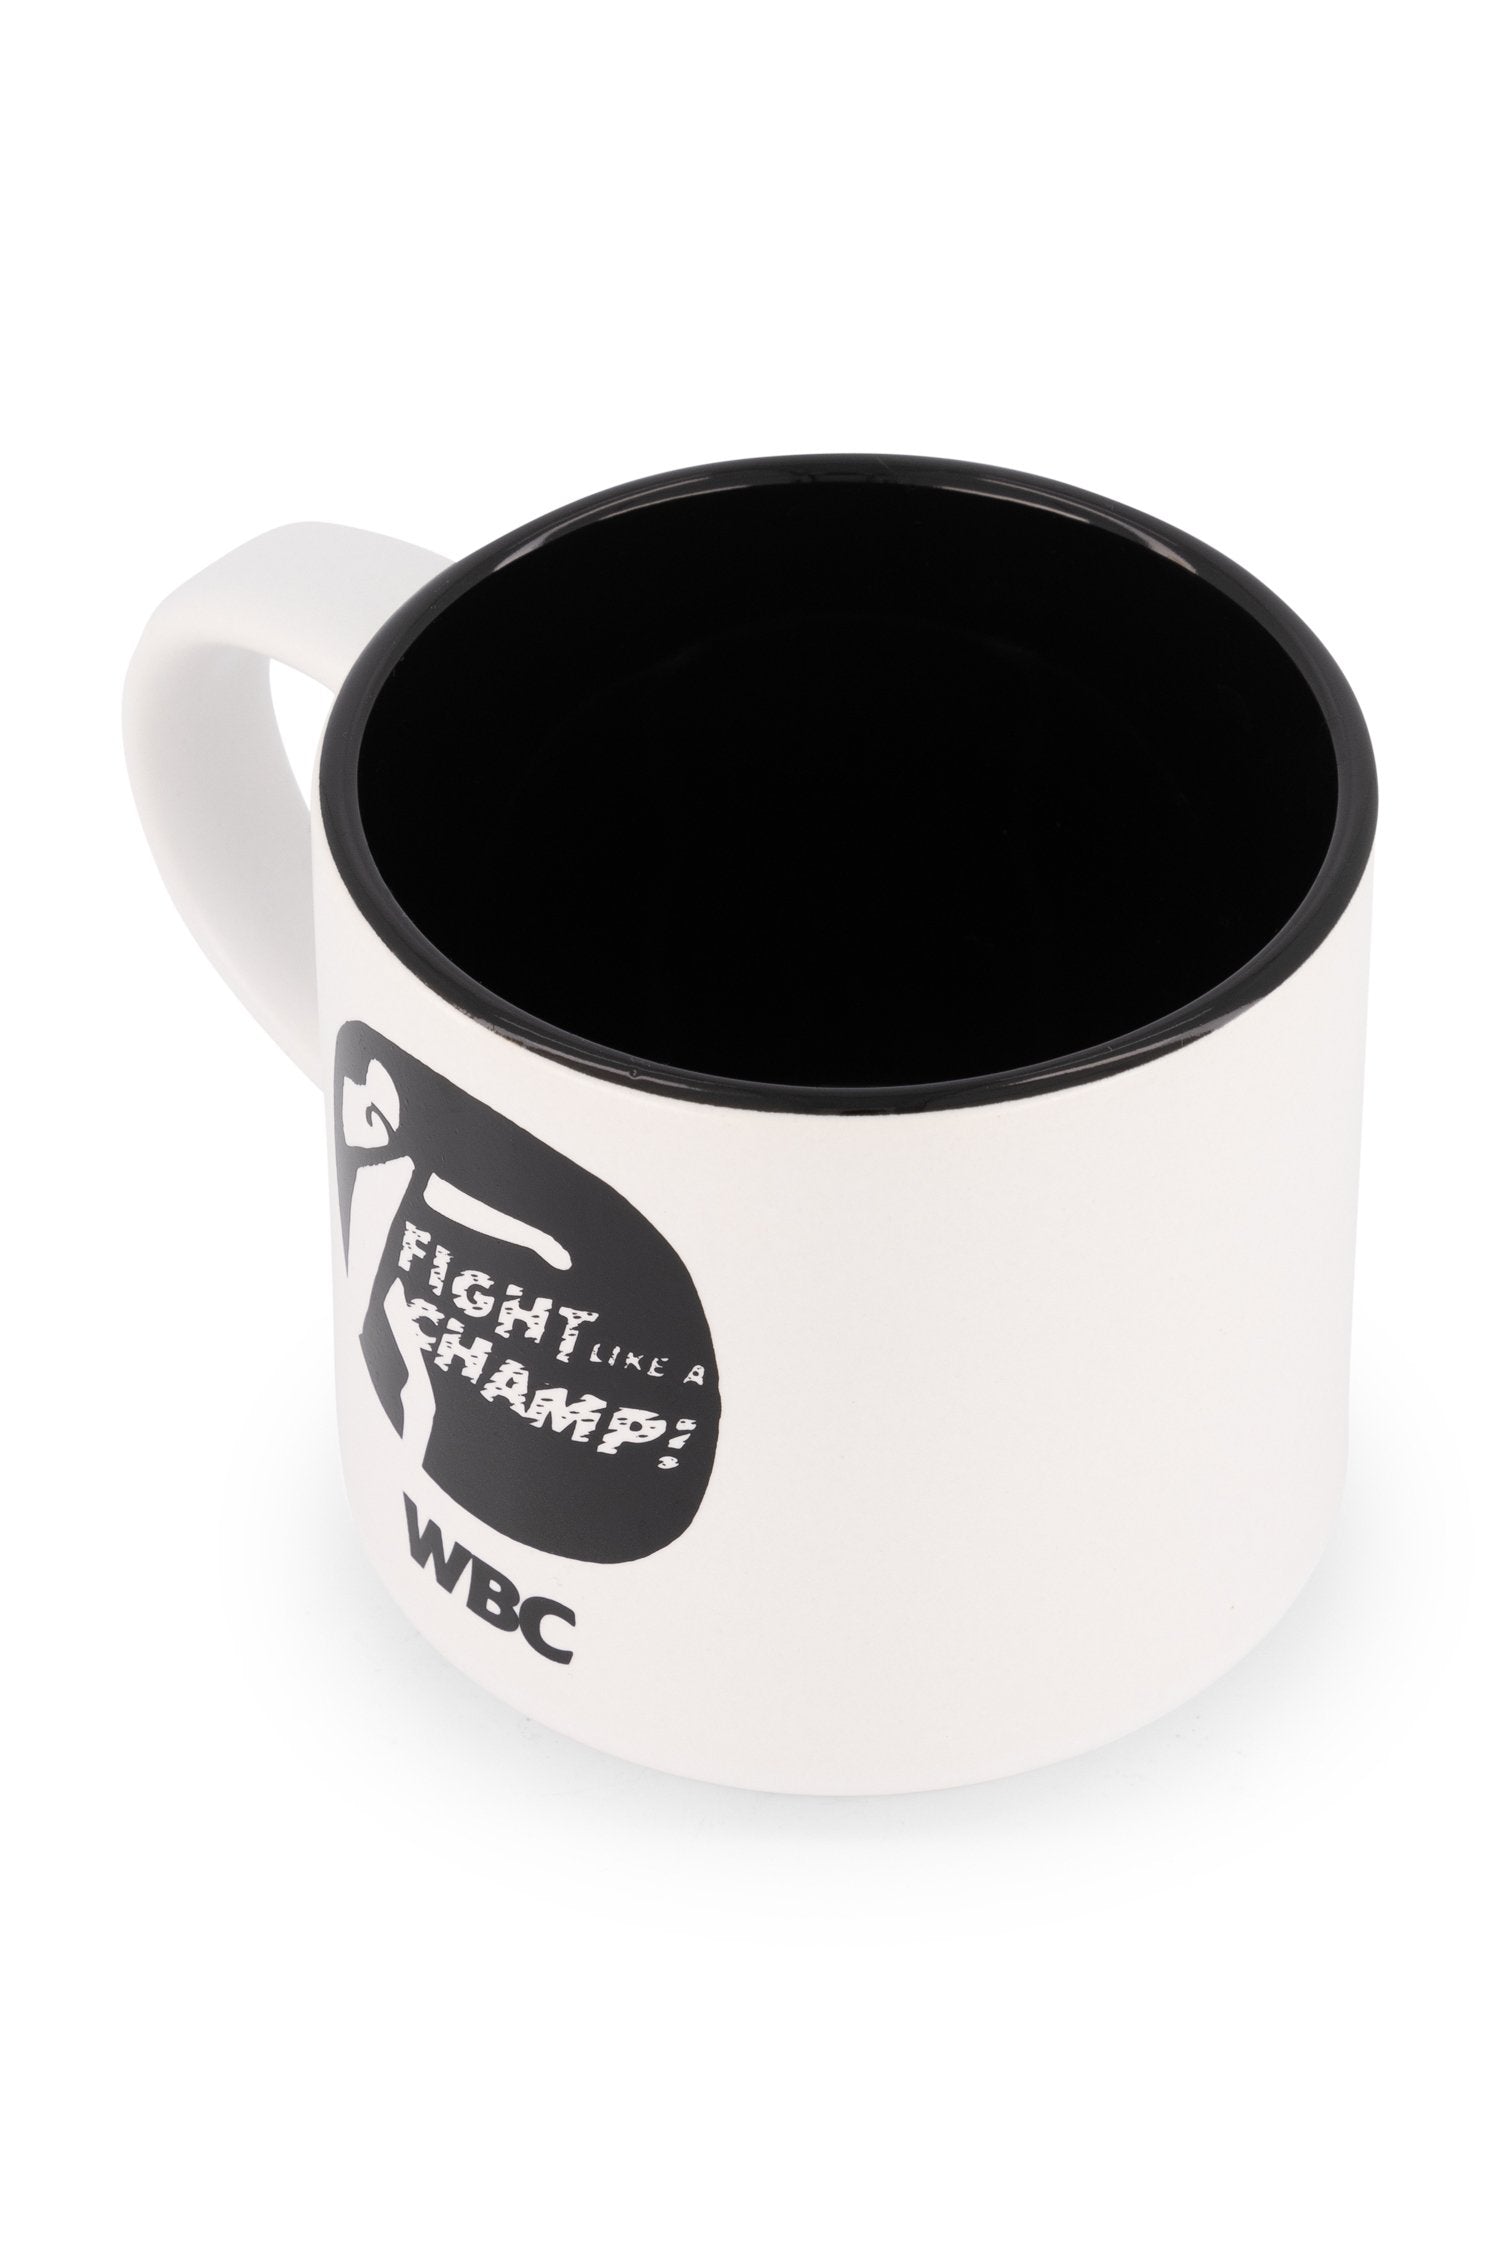 WBC Mugs Fight Like a Champ Coffee Mug